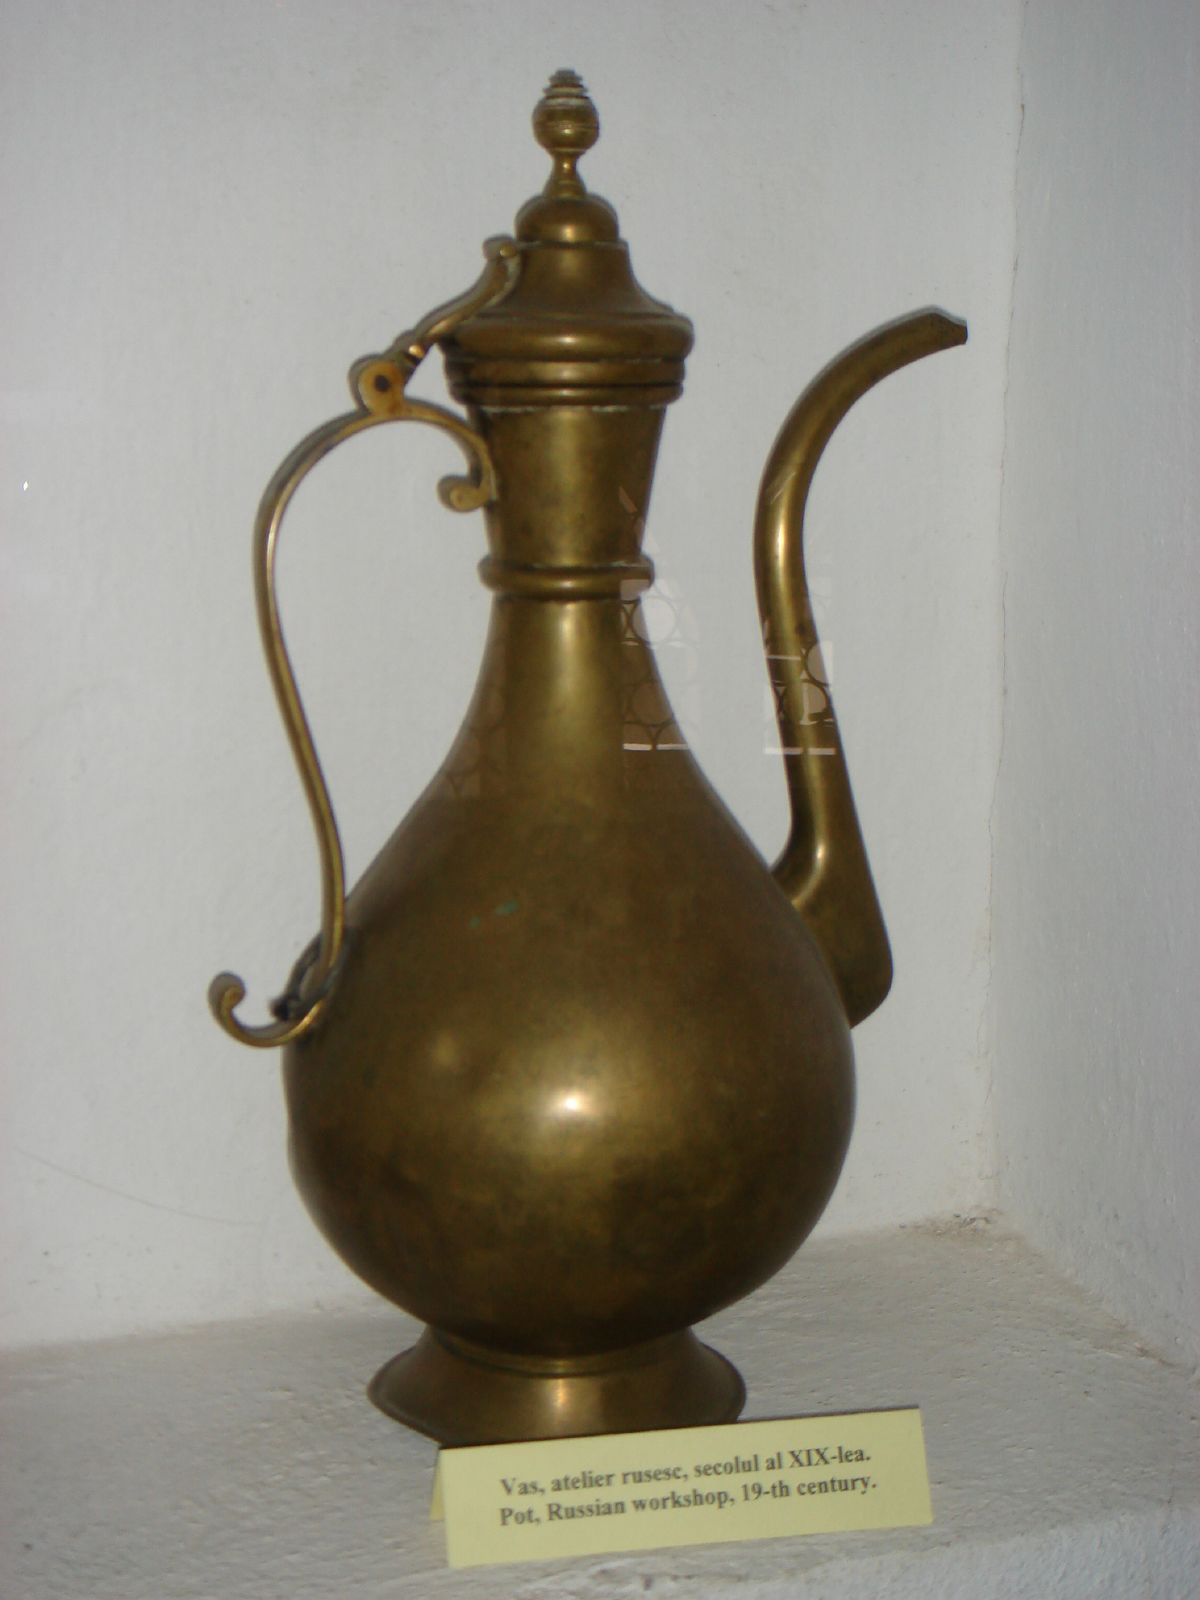 a golden tea pot is shown on a shelf